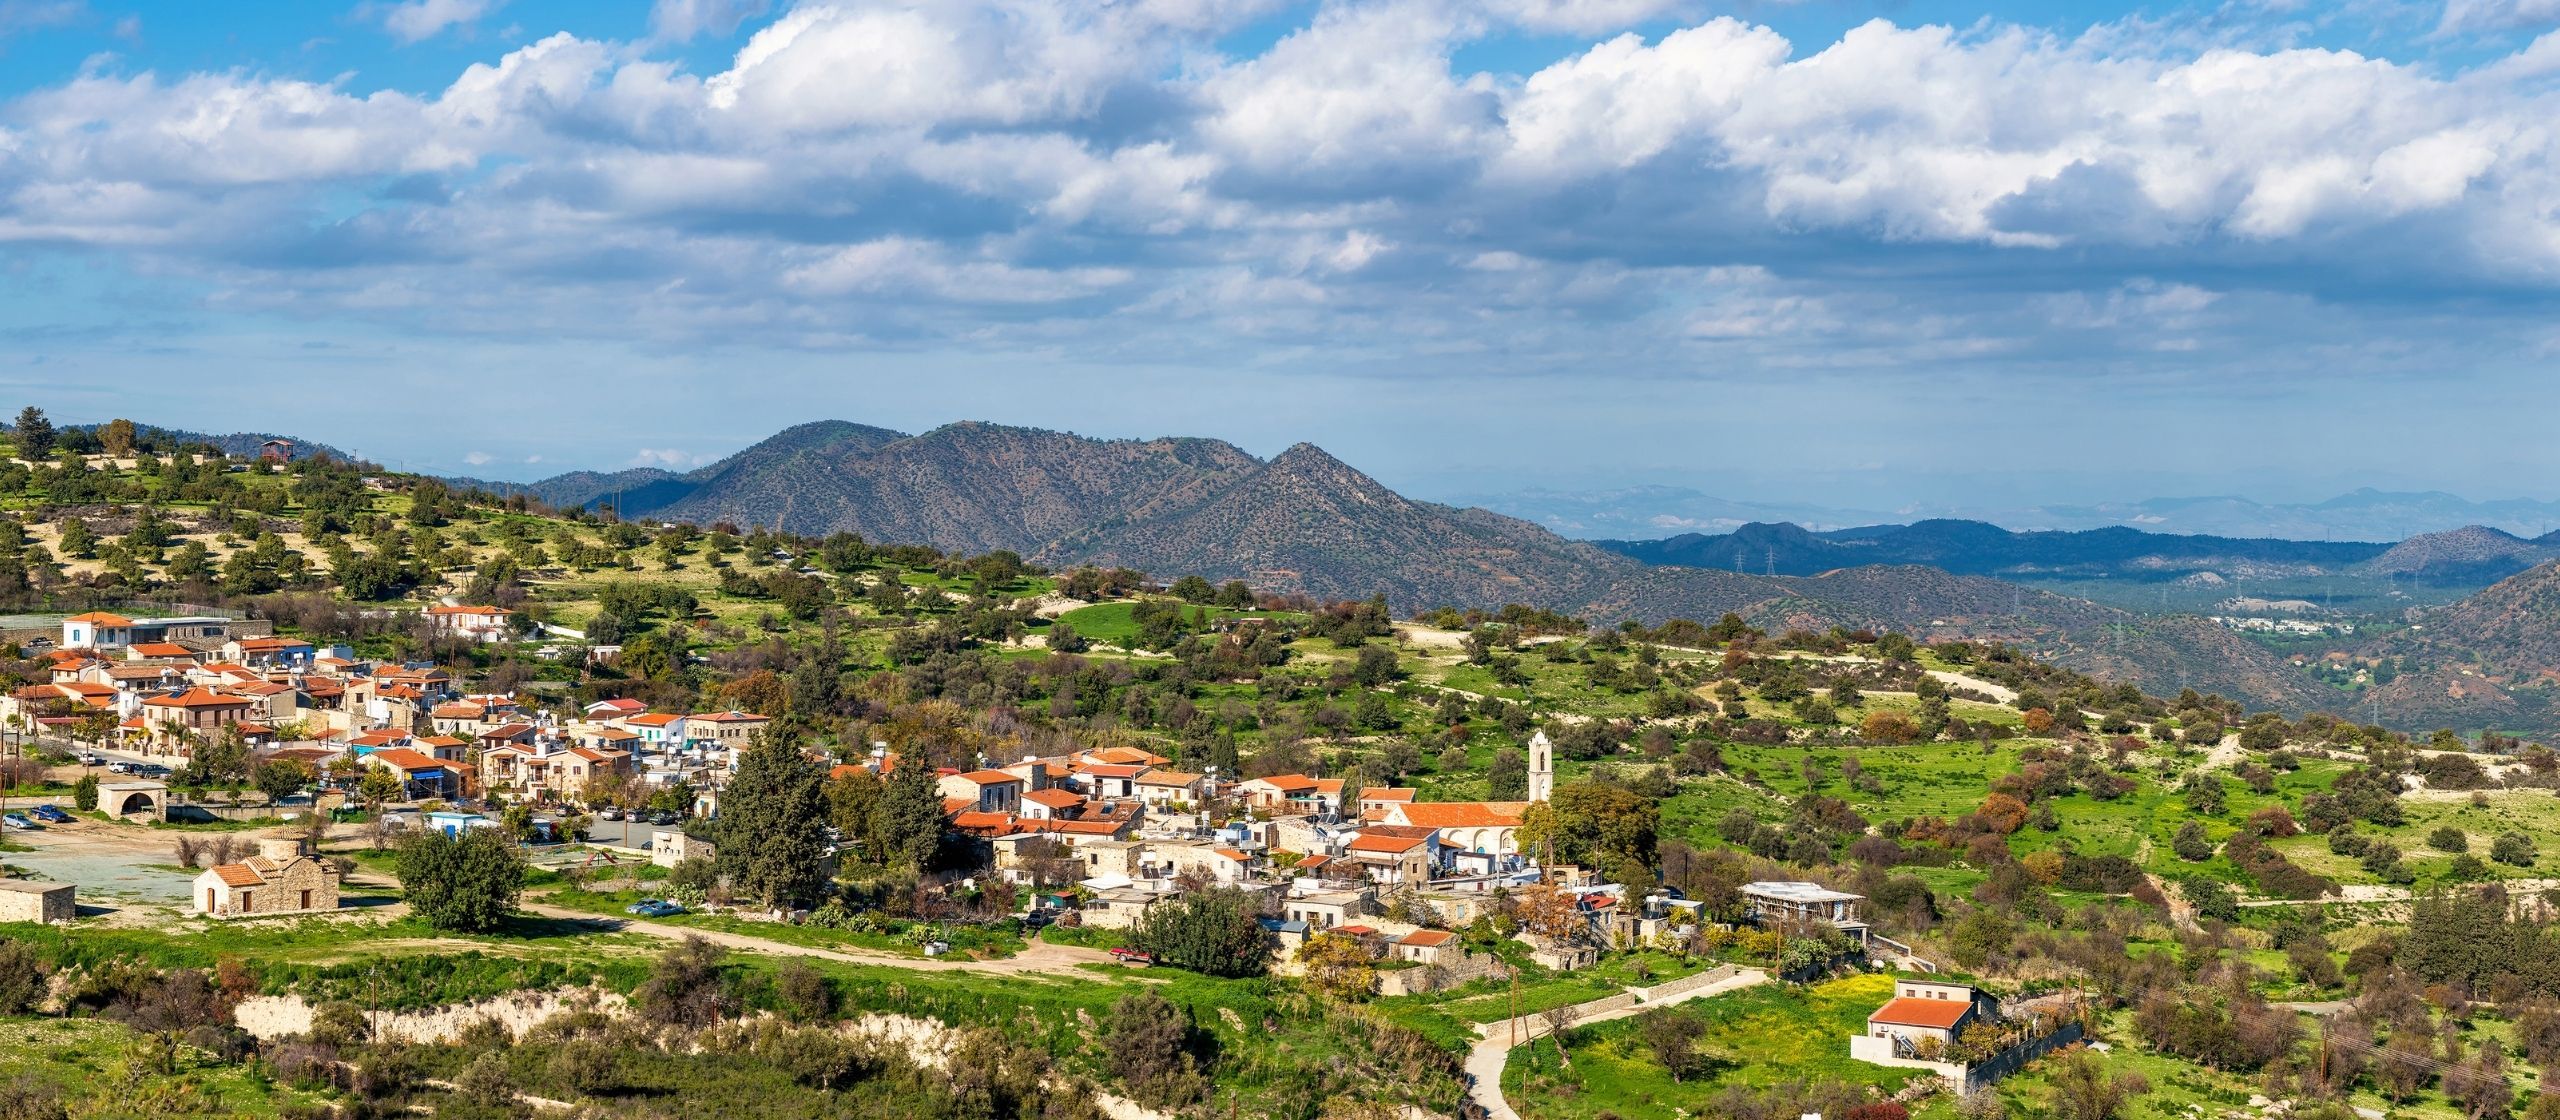 Kato Lefkara Village in Cyprus